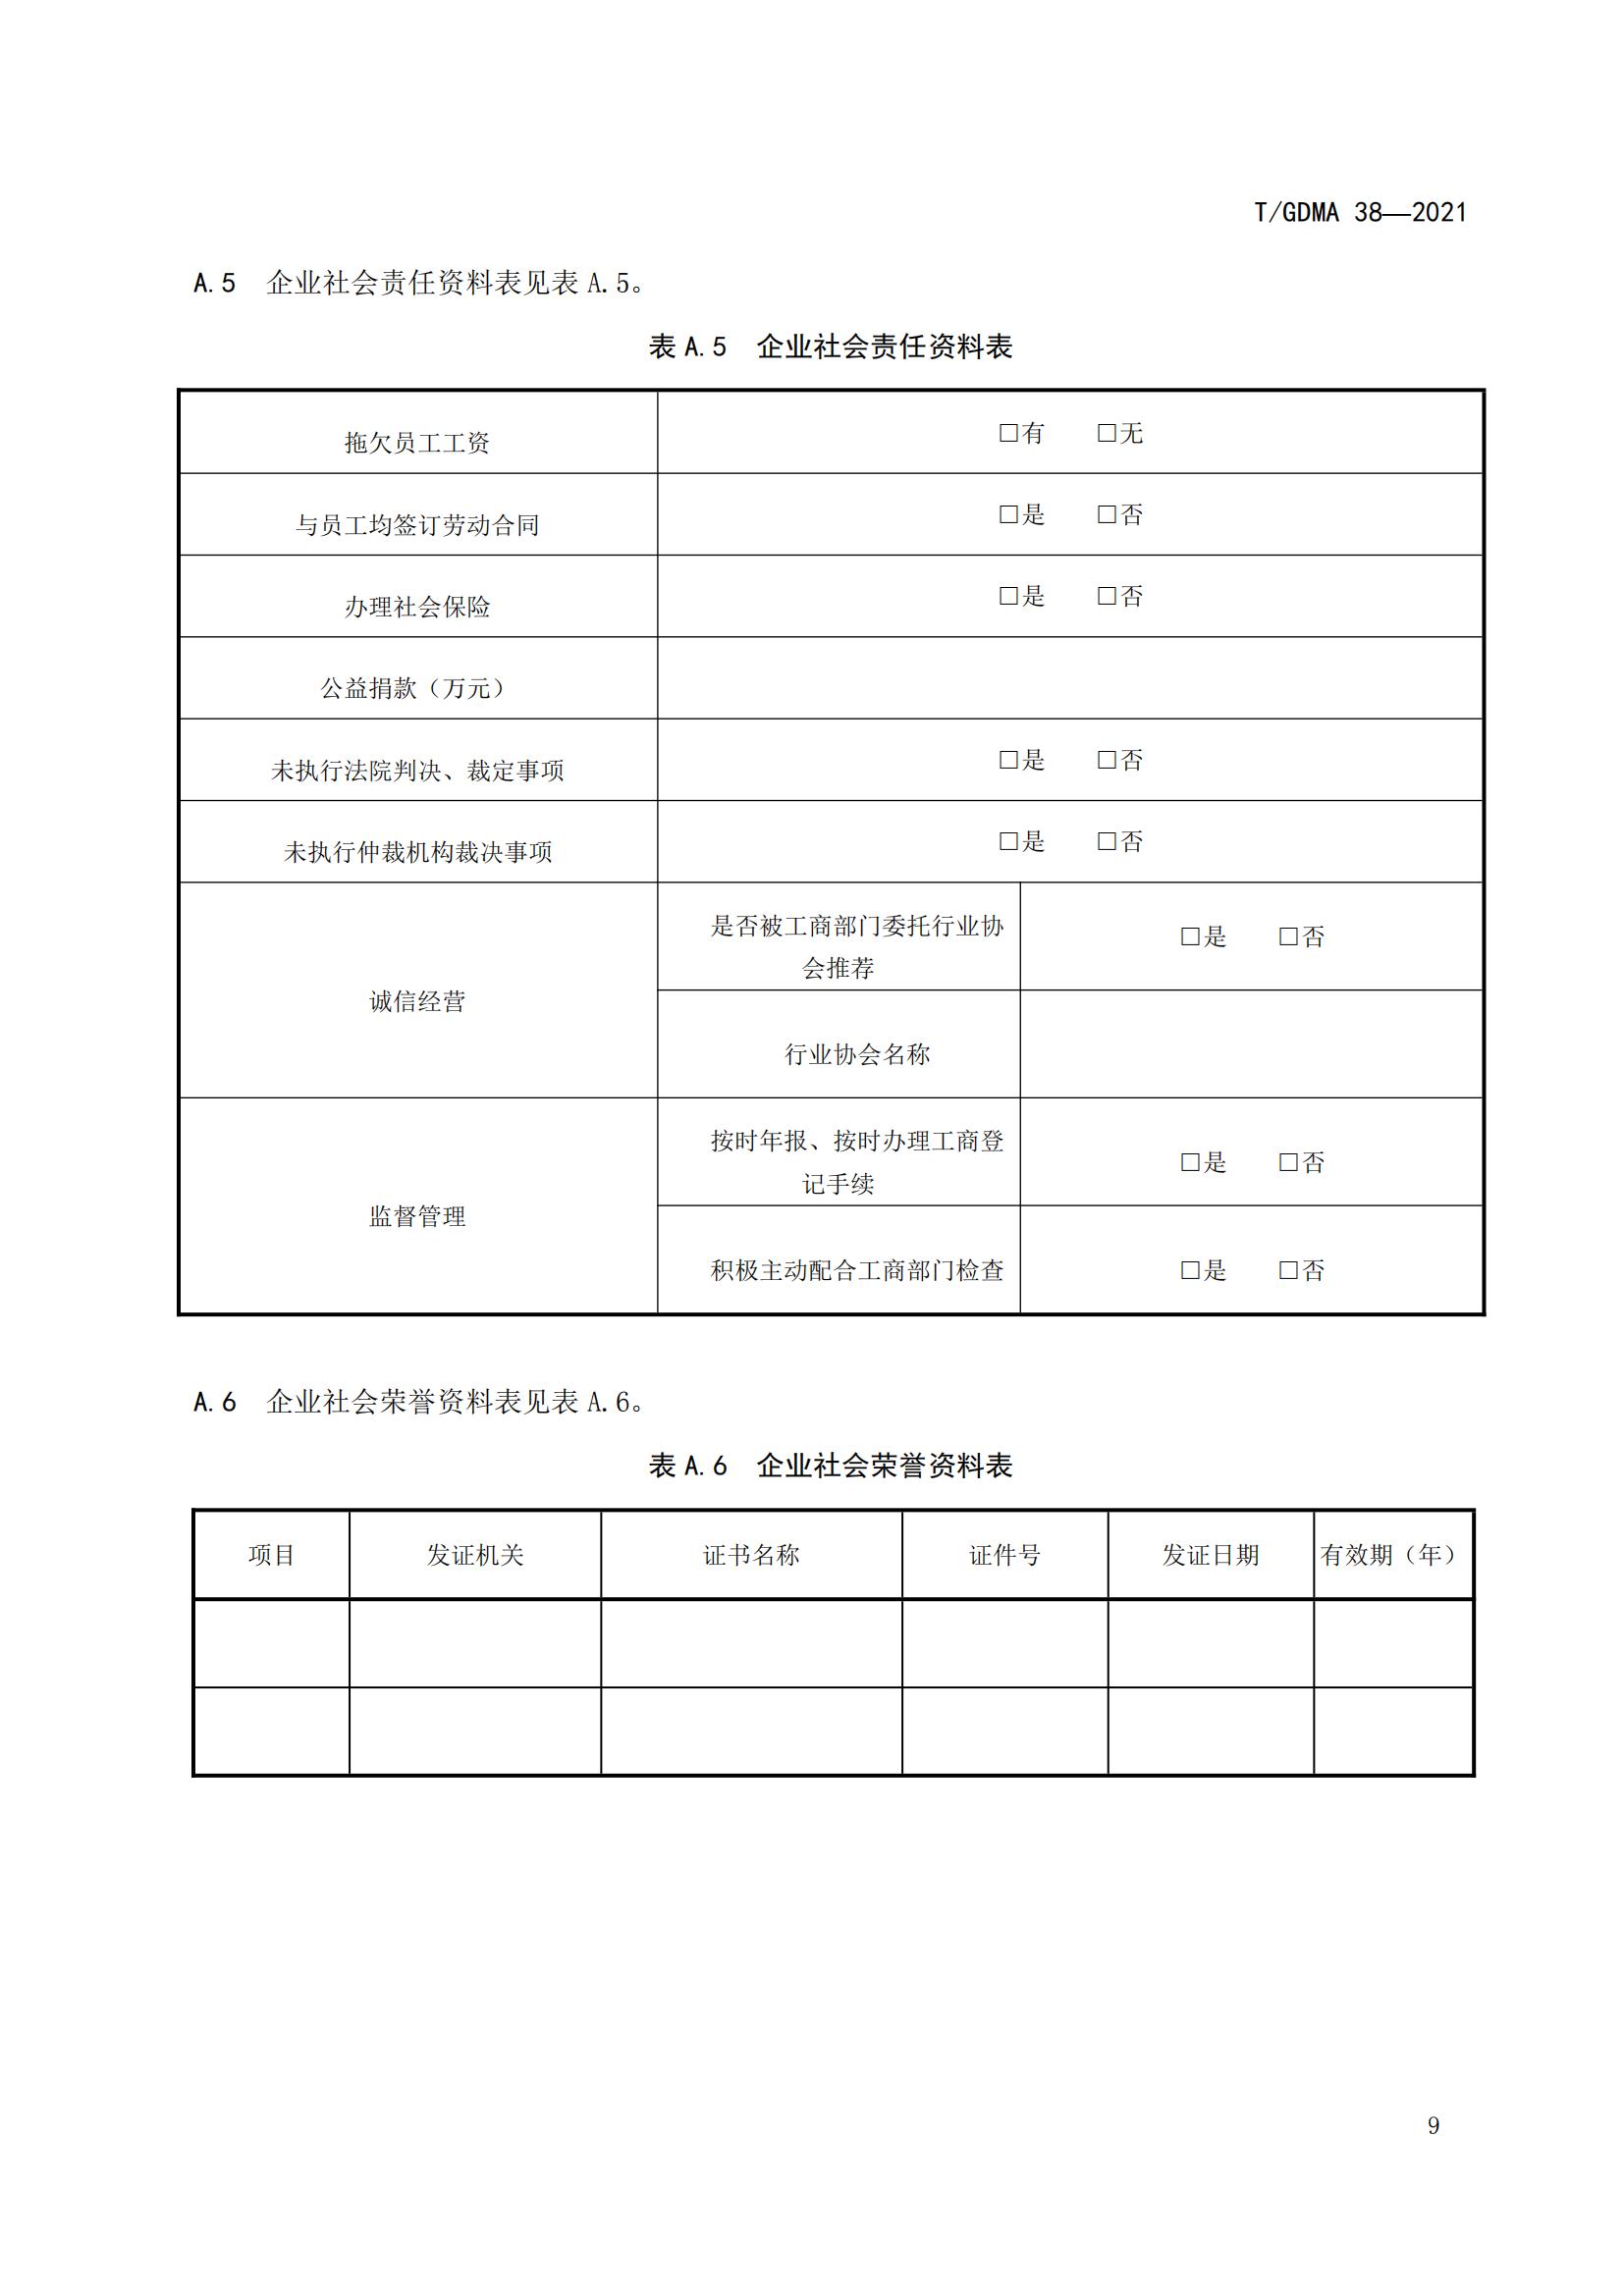 TGDMA 38 广东省守合同重信用企业等级评定规范-发布稿_12.jpg